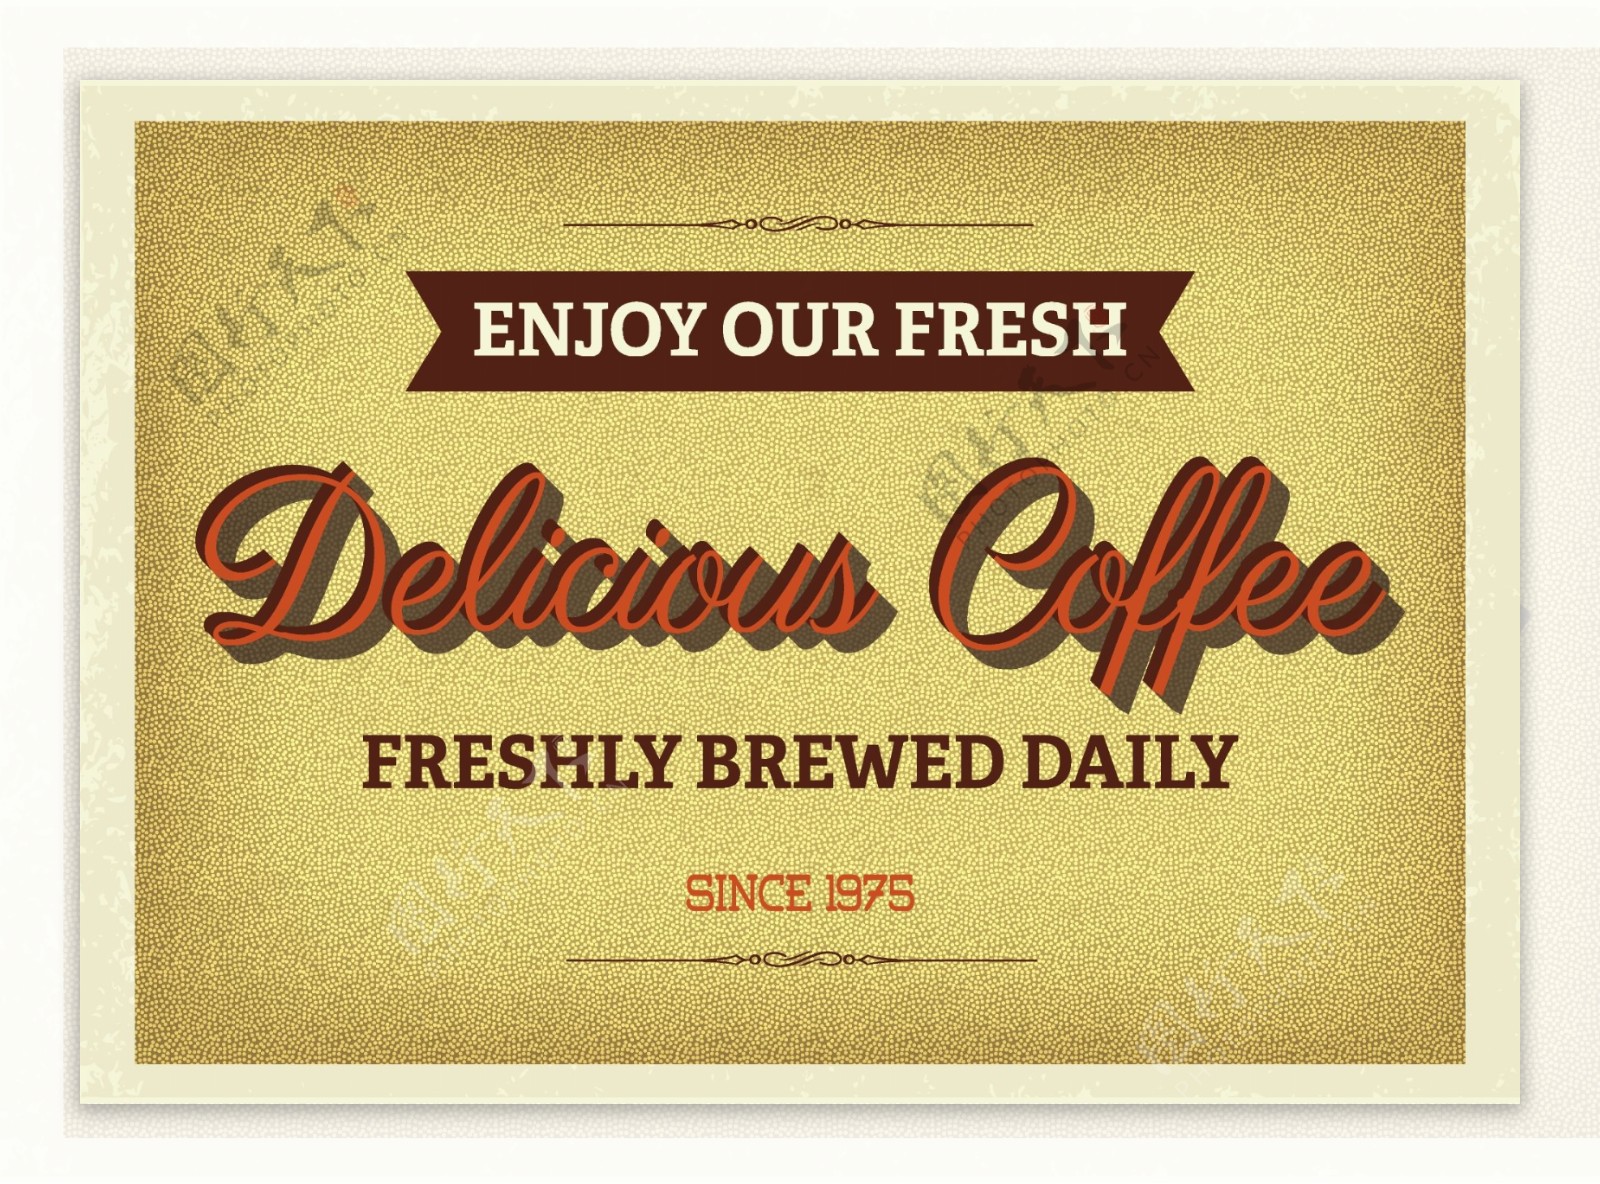 老式字体咖啡海报